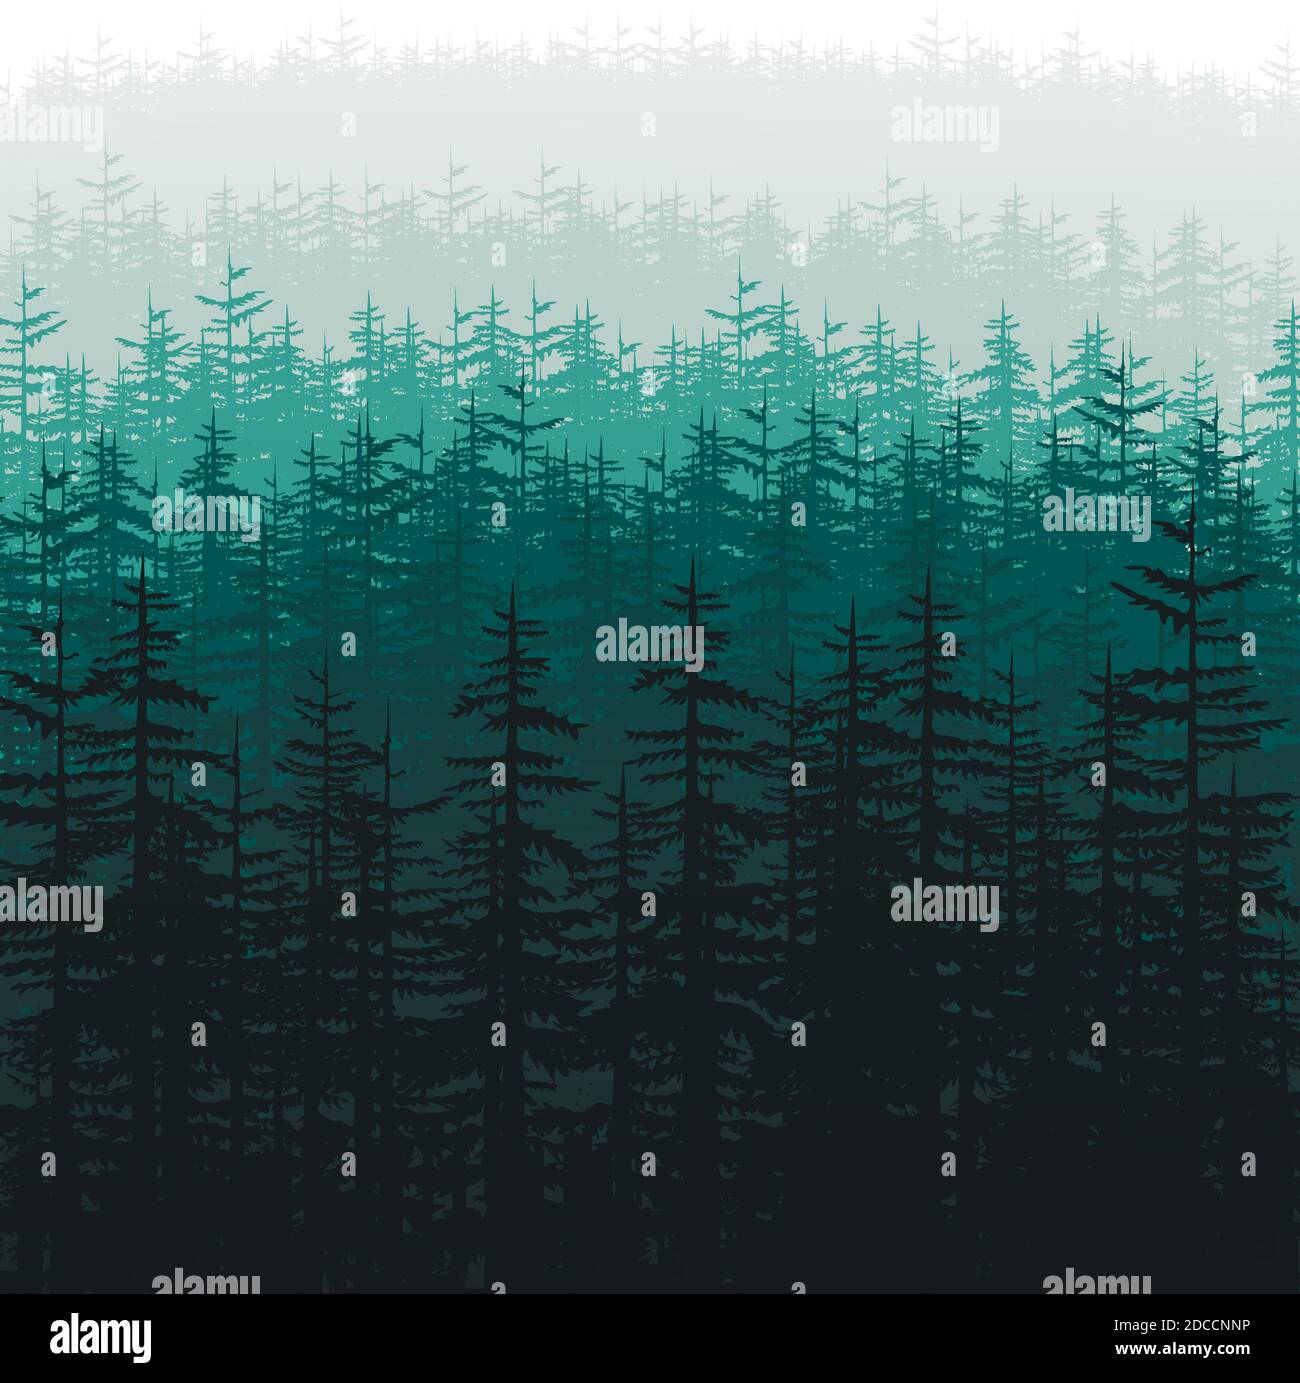 Wald Bäume Silhouetten Hintergrund Vektor Illustration. Horizontale abstrakte Natur Tapete von Hügeln mit Holz bedeckt Stock Vektor